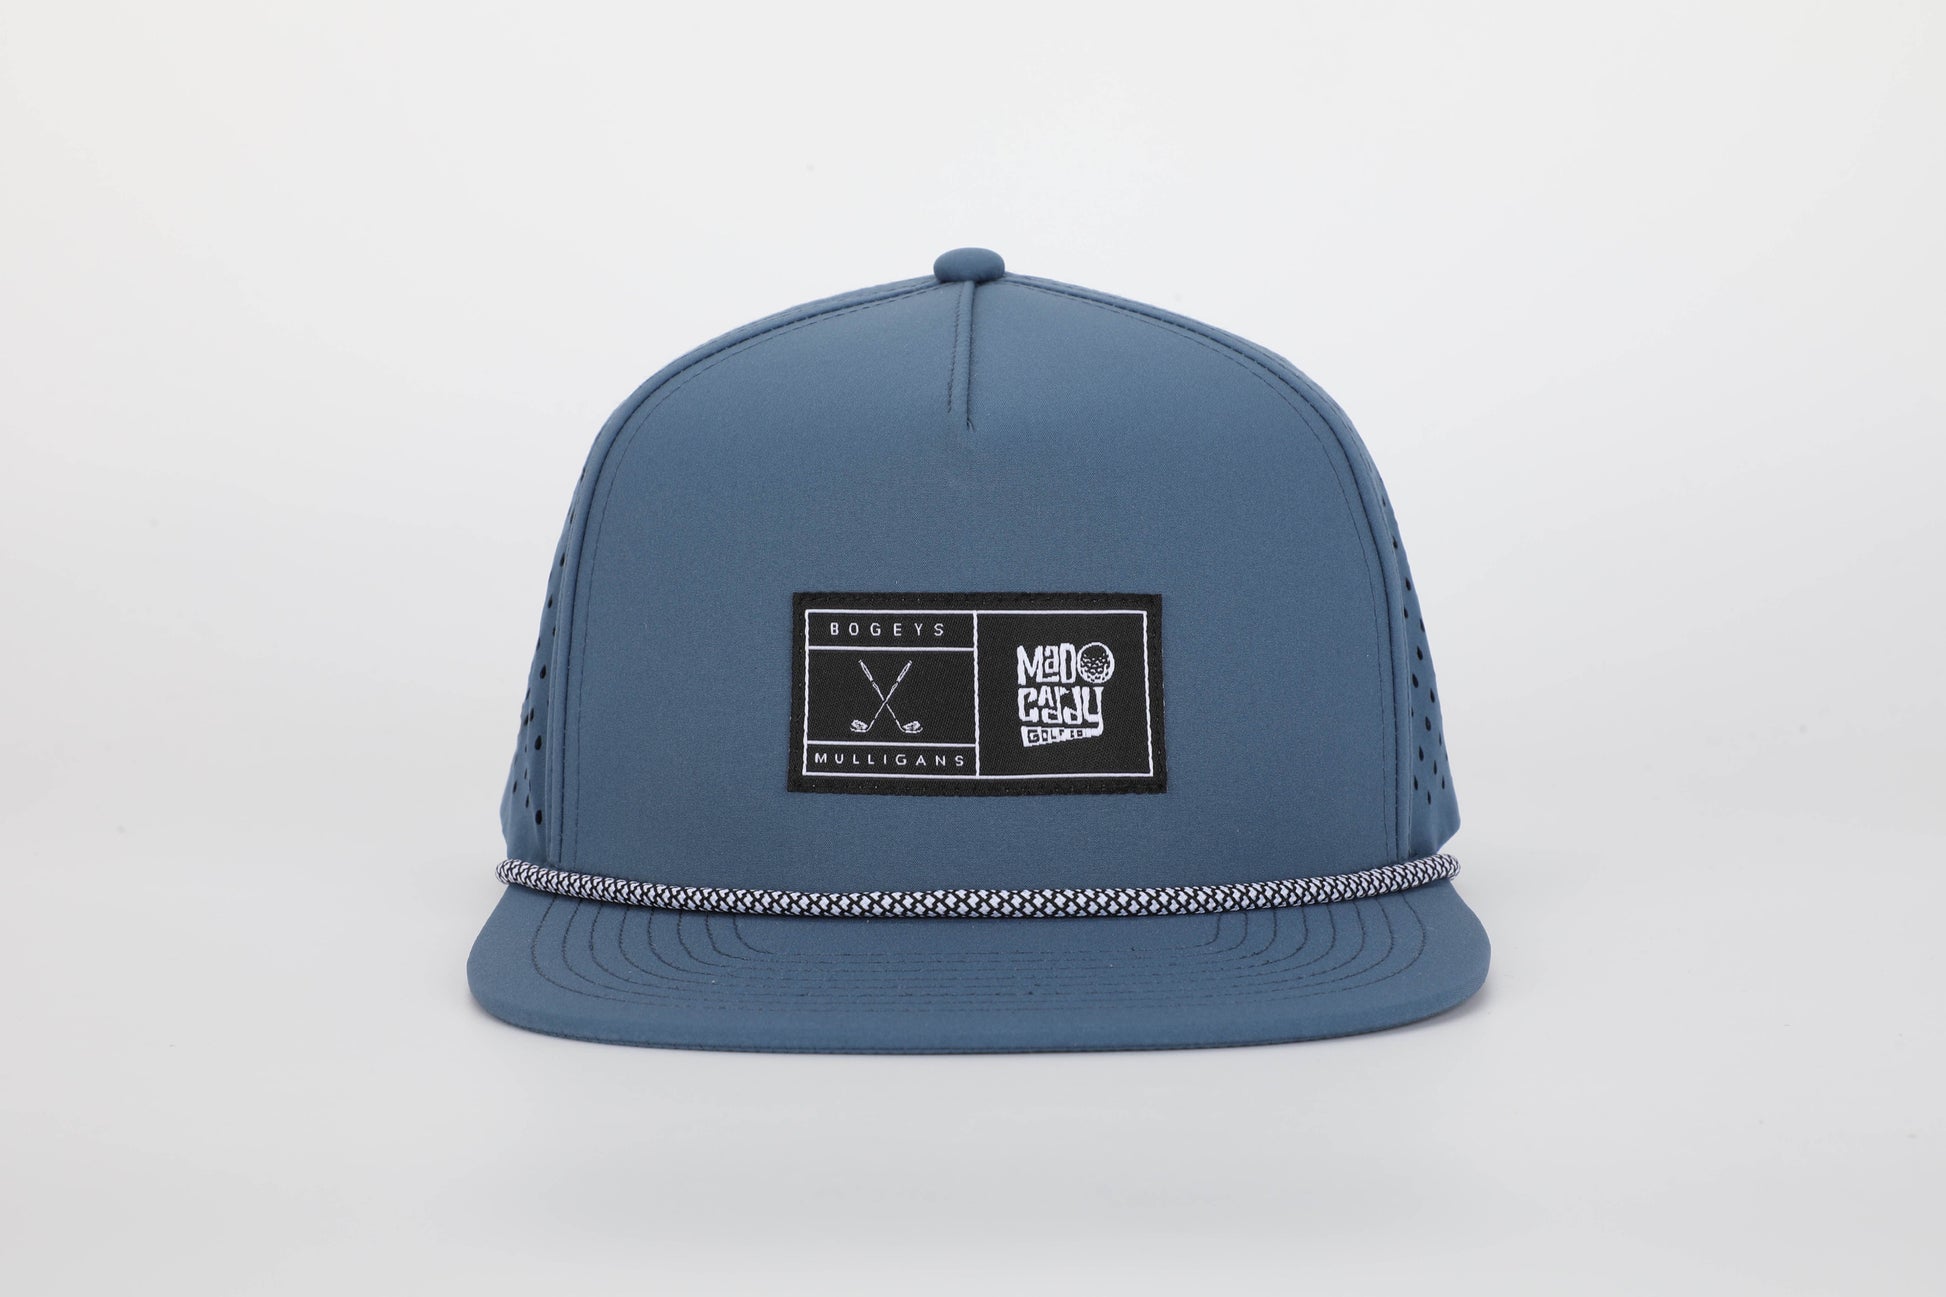 Bogeys x Mulligans Hat - Navy Blue | Mad Caddy Golf